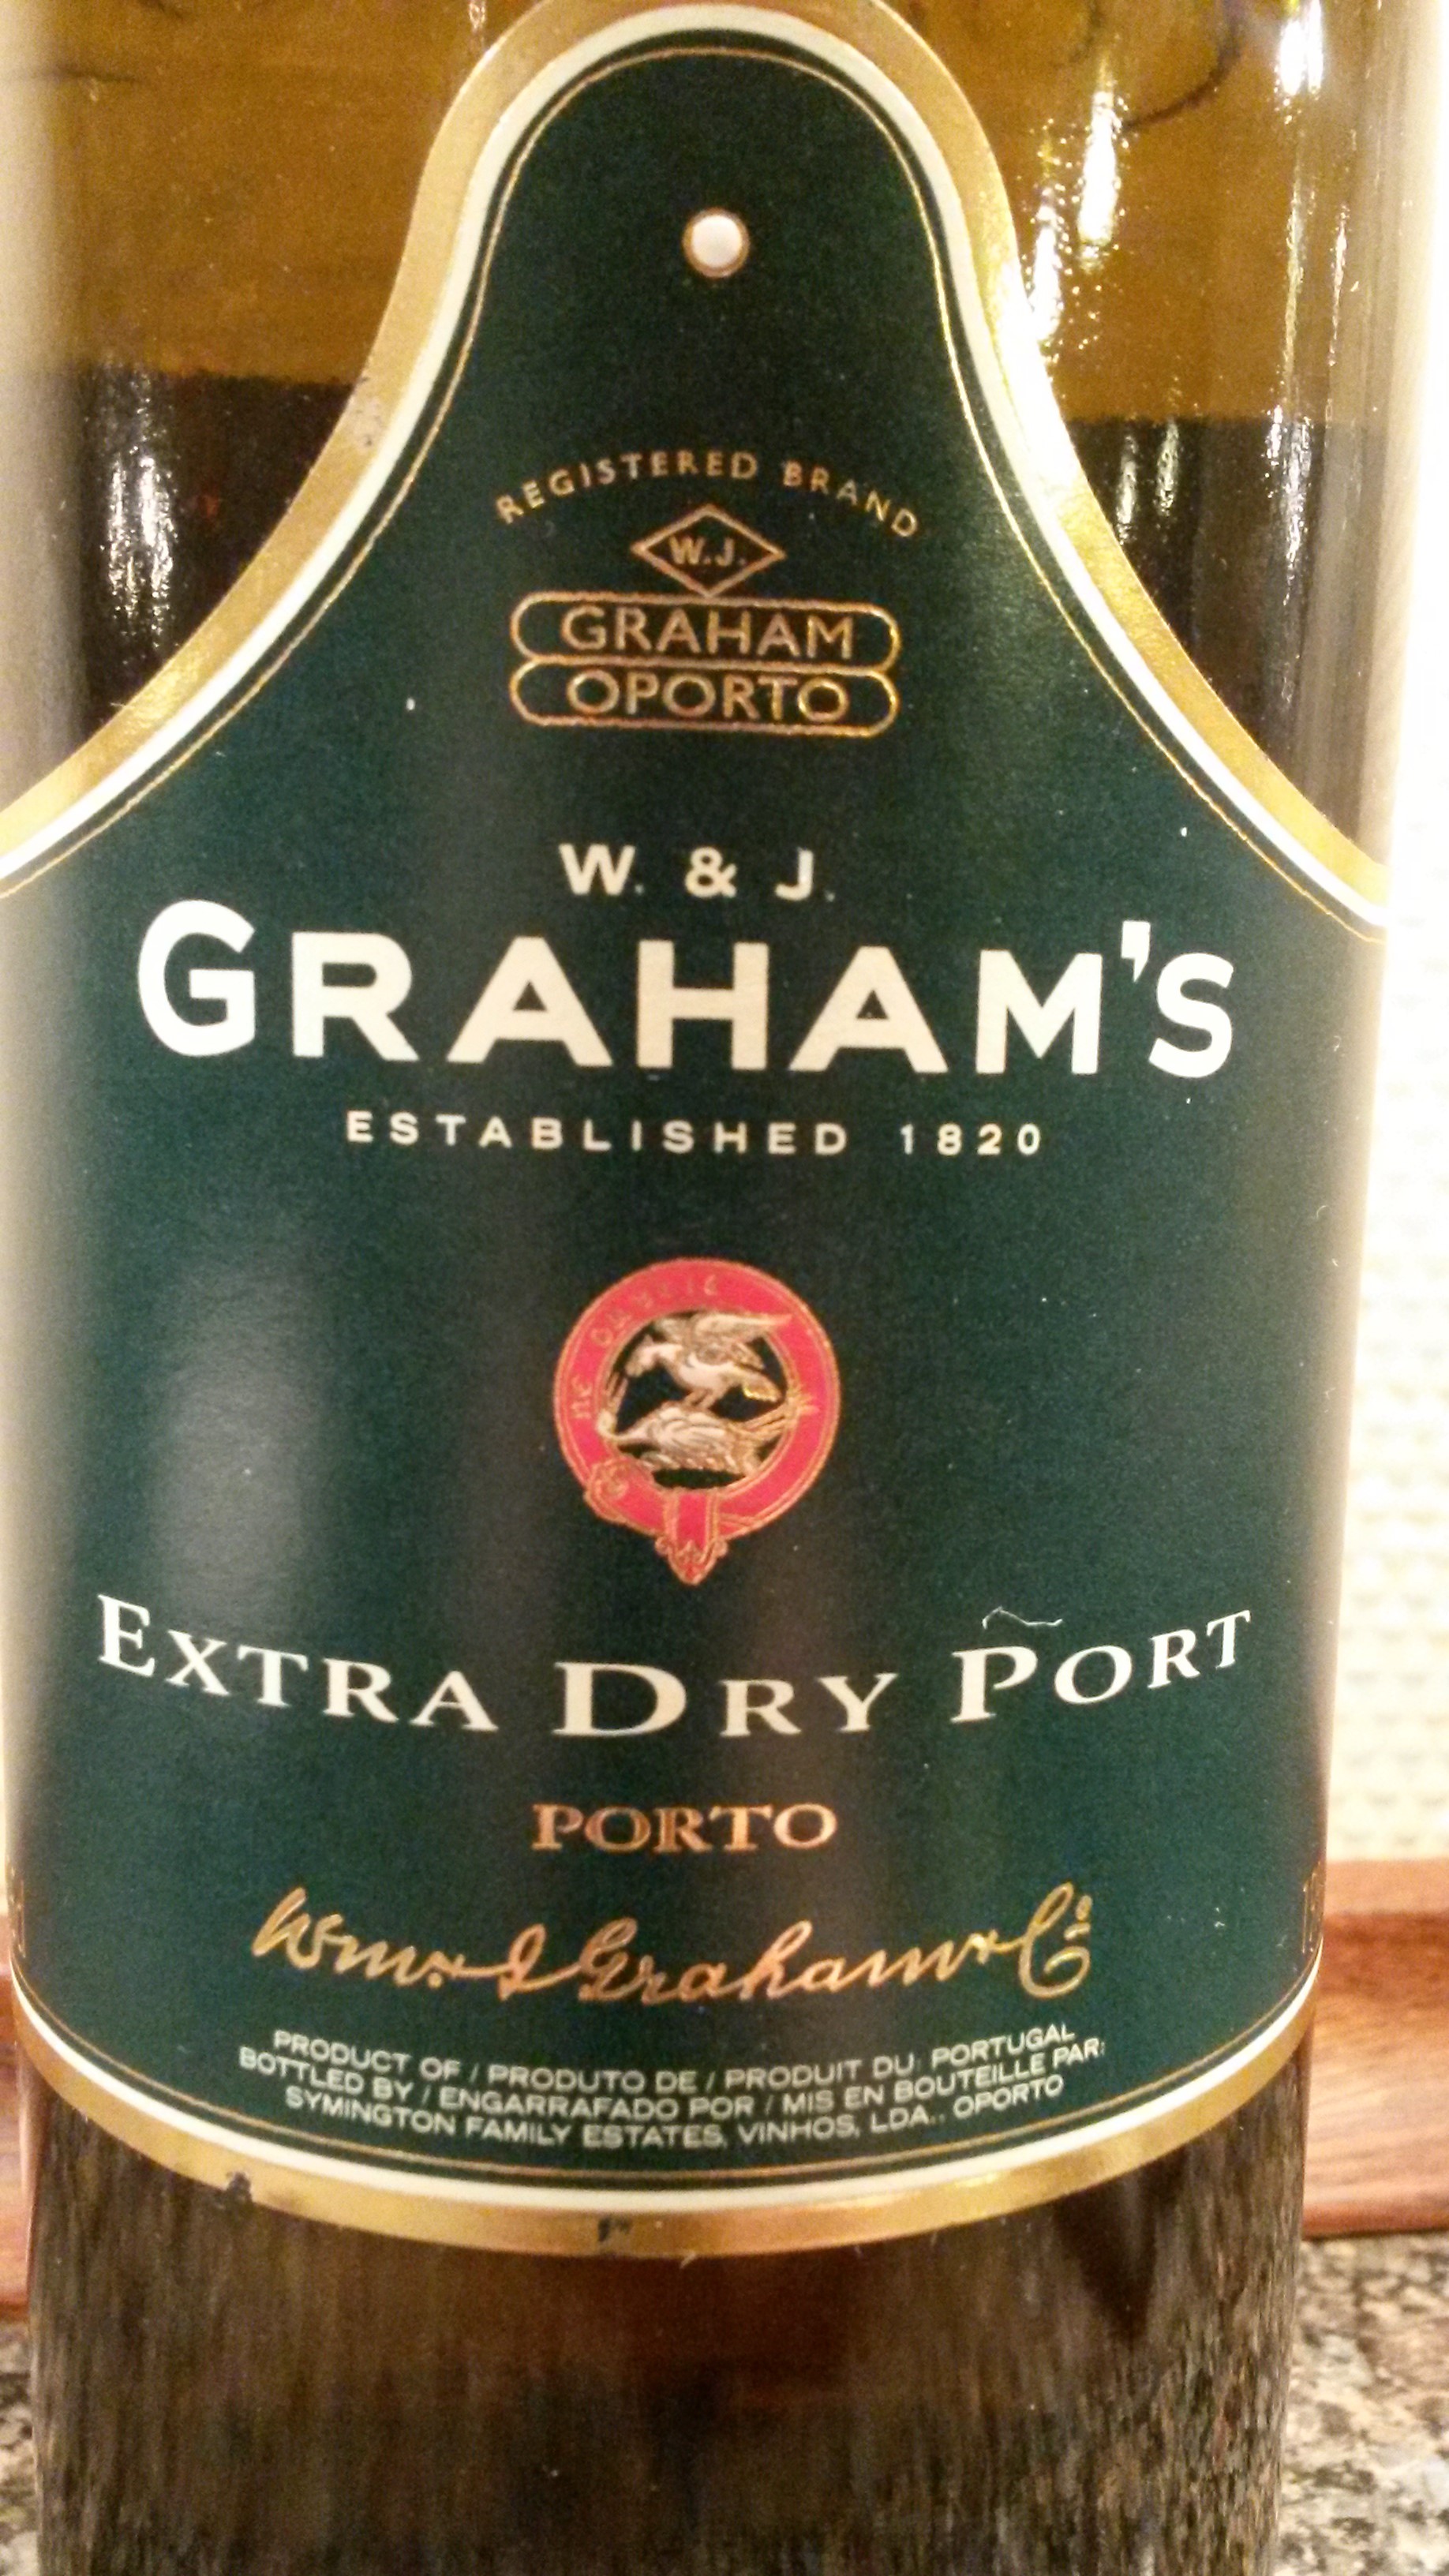 Grahams dry white